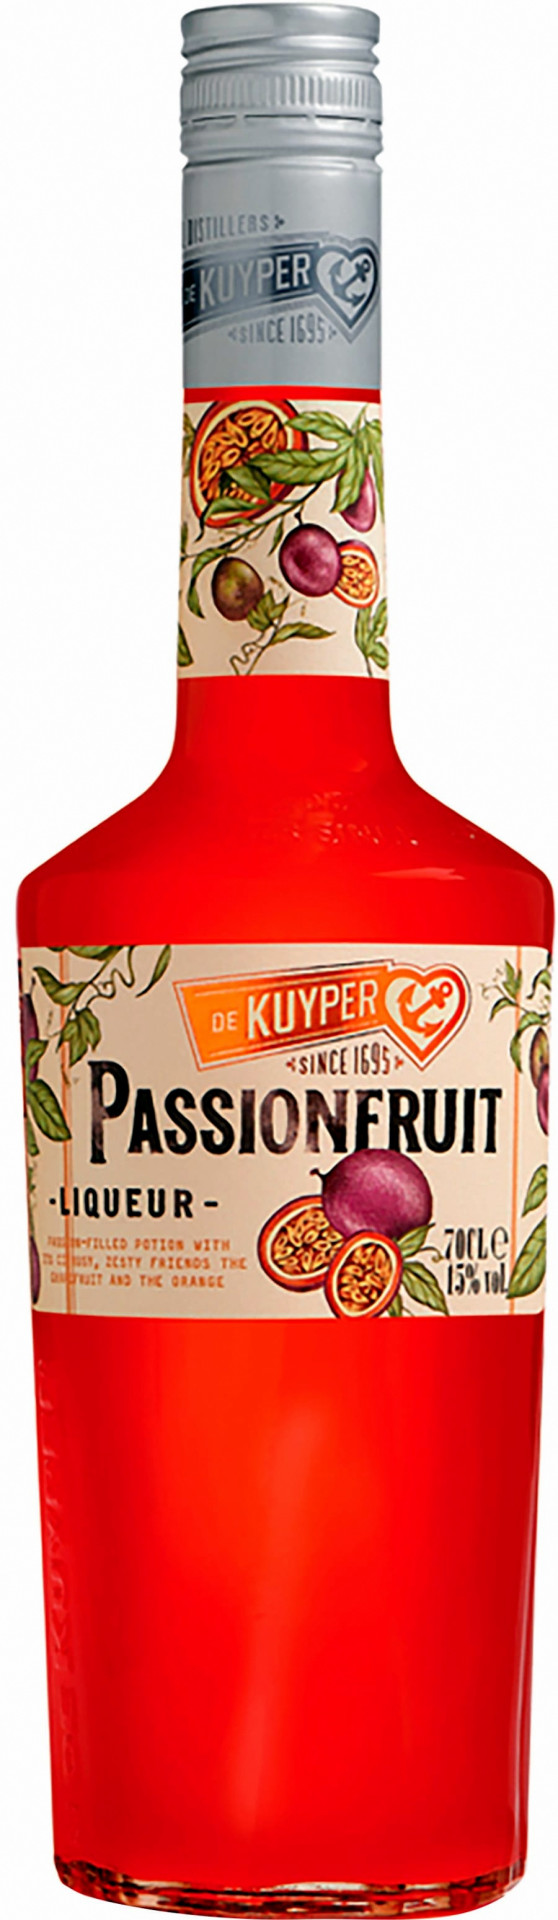 De Kuyper Passion Fruit 0,7l